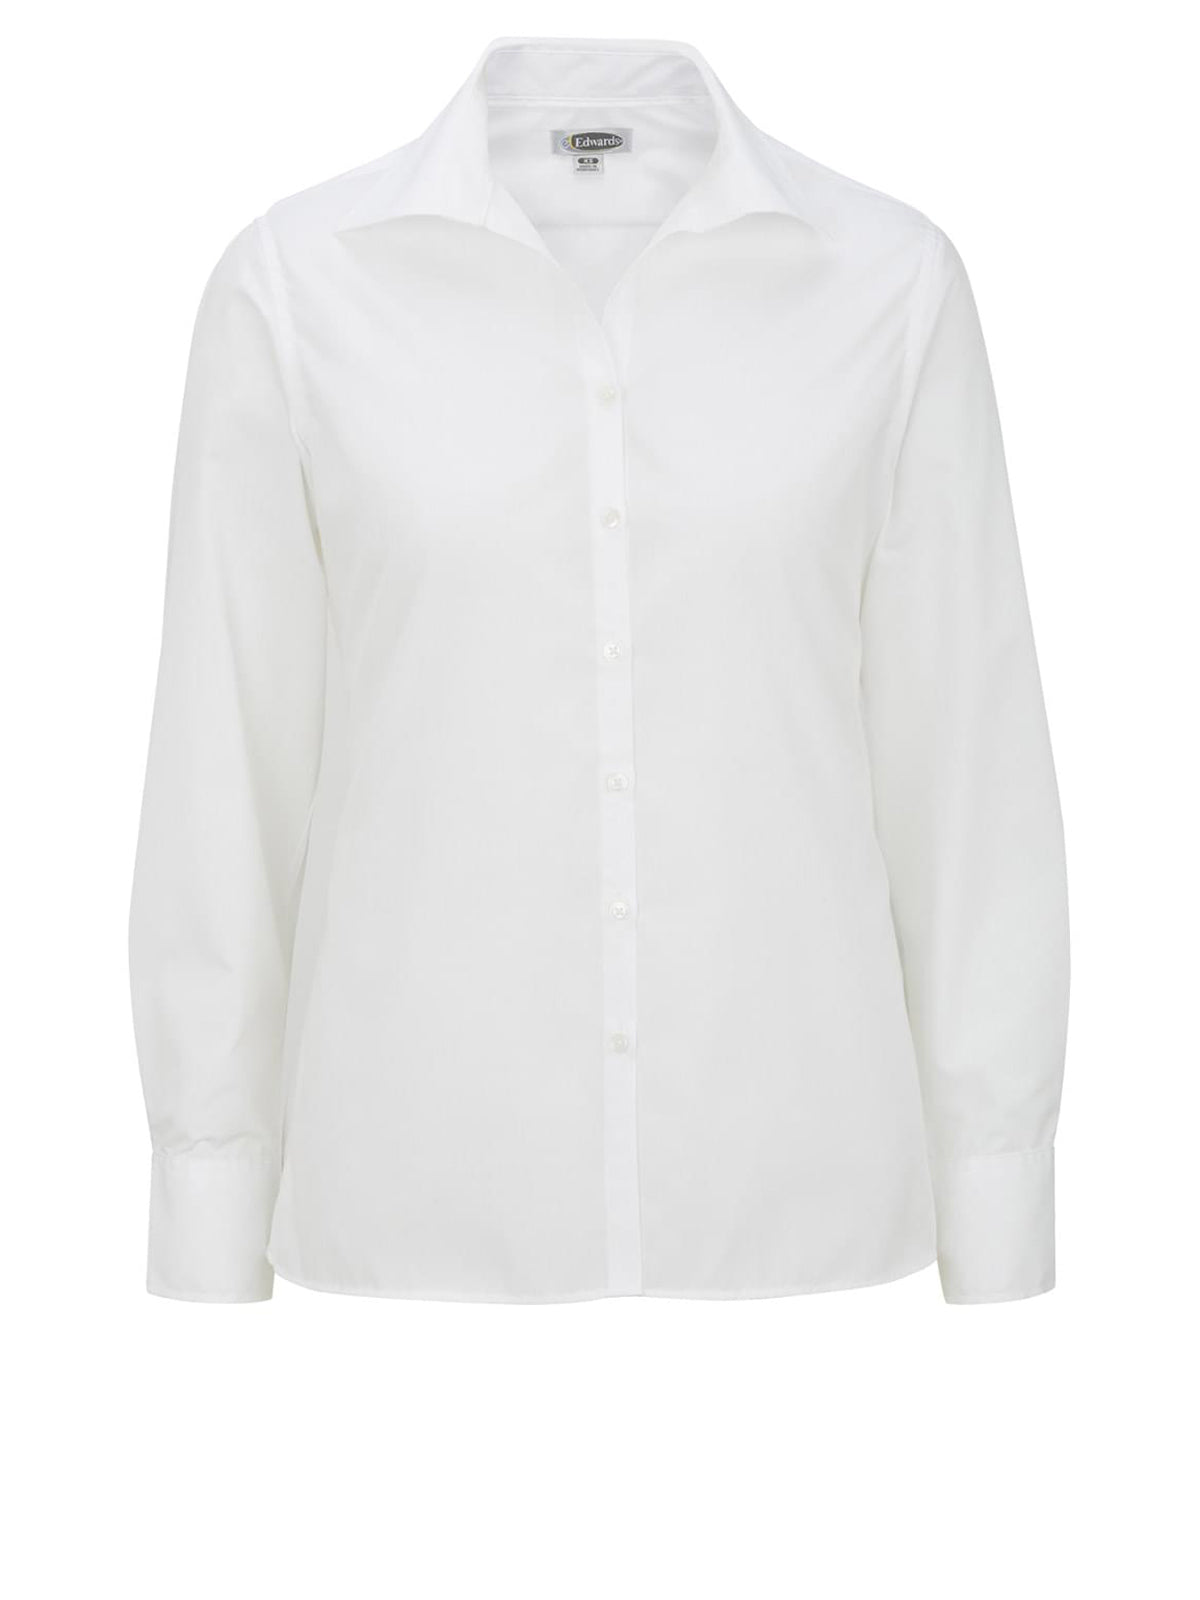 Women's Long Sleeve Lightweight Poplin Shirt - 5295 - White